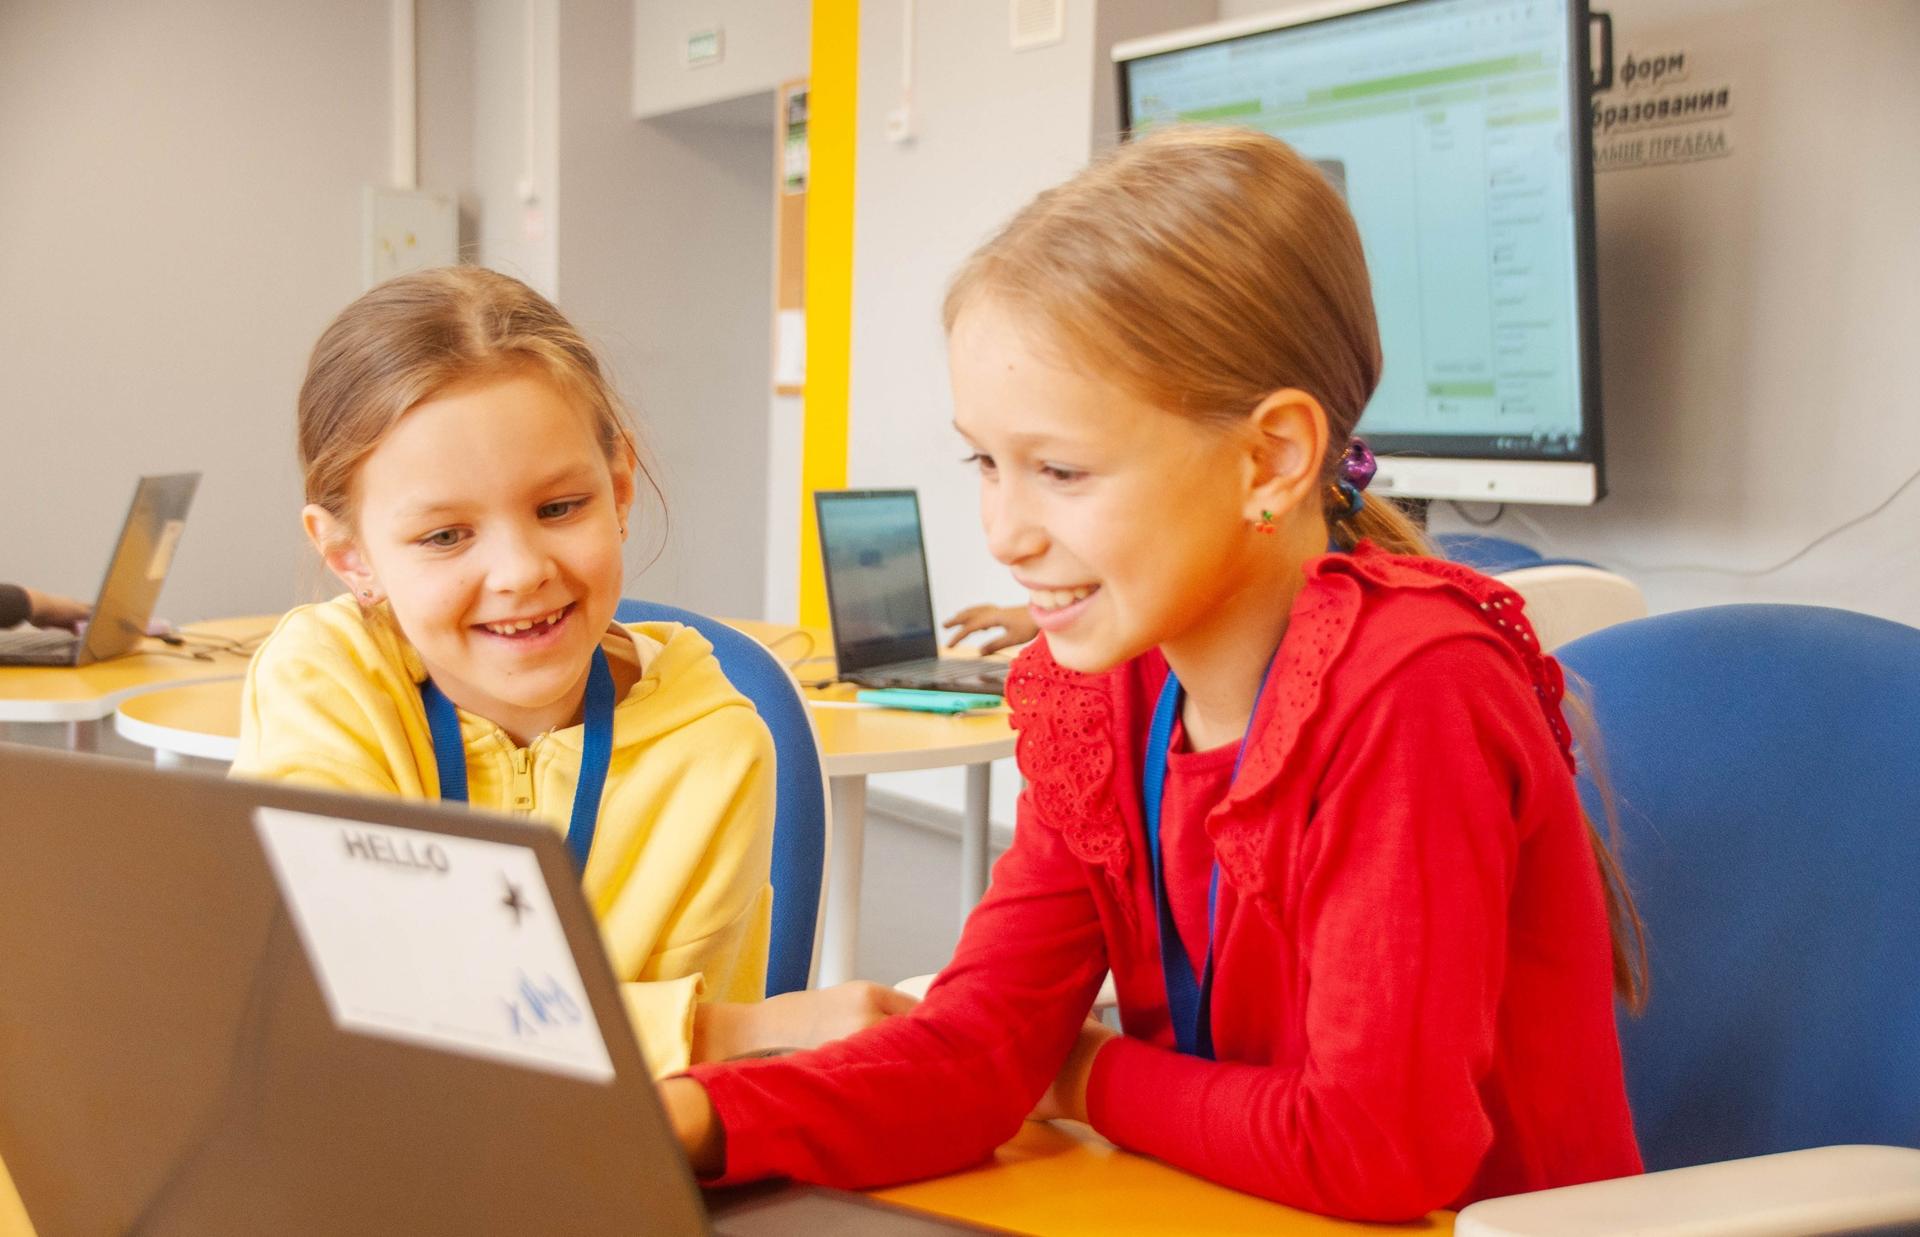 IT, хайтек и компьютерная грамотность: в Королеве работает детский технопарк "Кванториум"